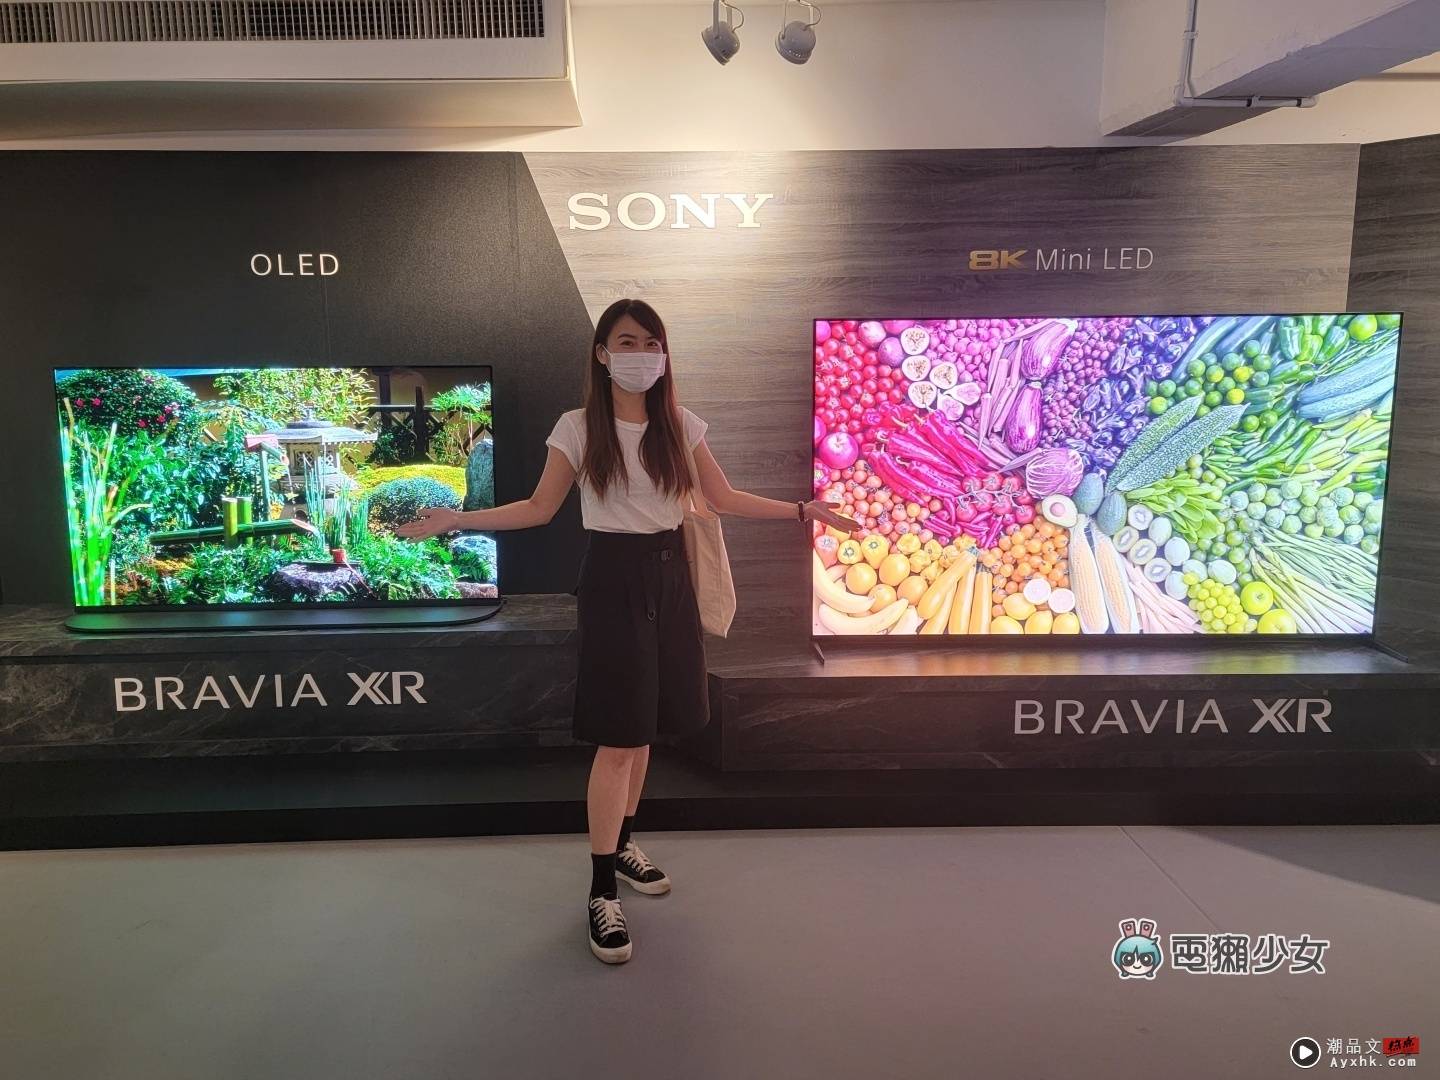 出门｜Sony BRAAIA XR 电视全系列皆为 PS5 推荐机种，体验 OLED、Mini LED 的旗舰级显色 数码科技 图2张